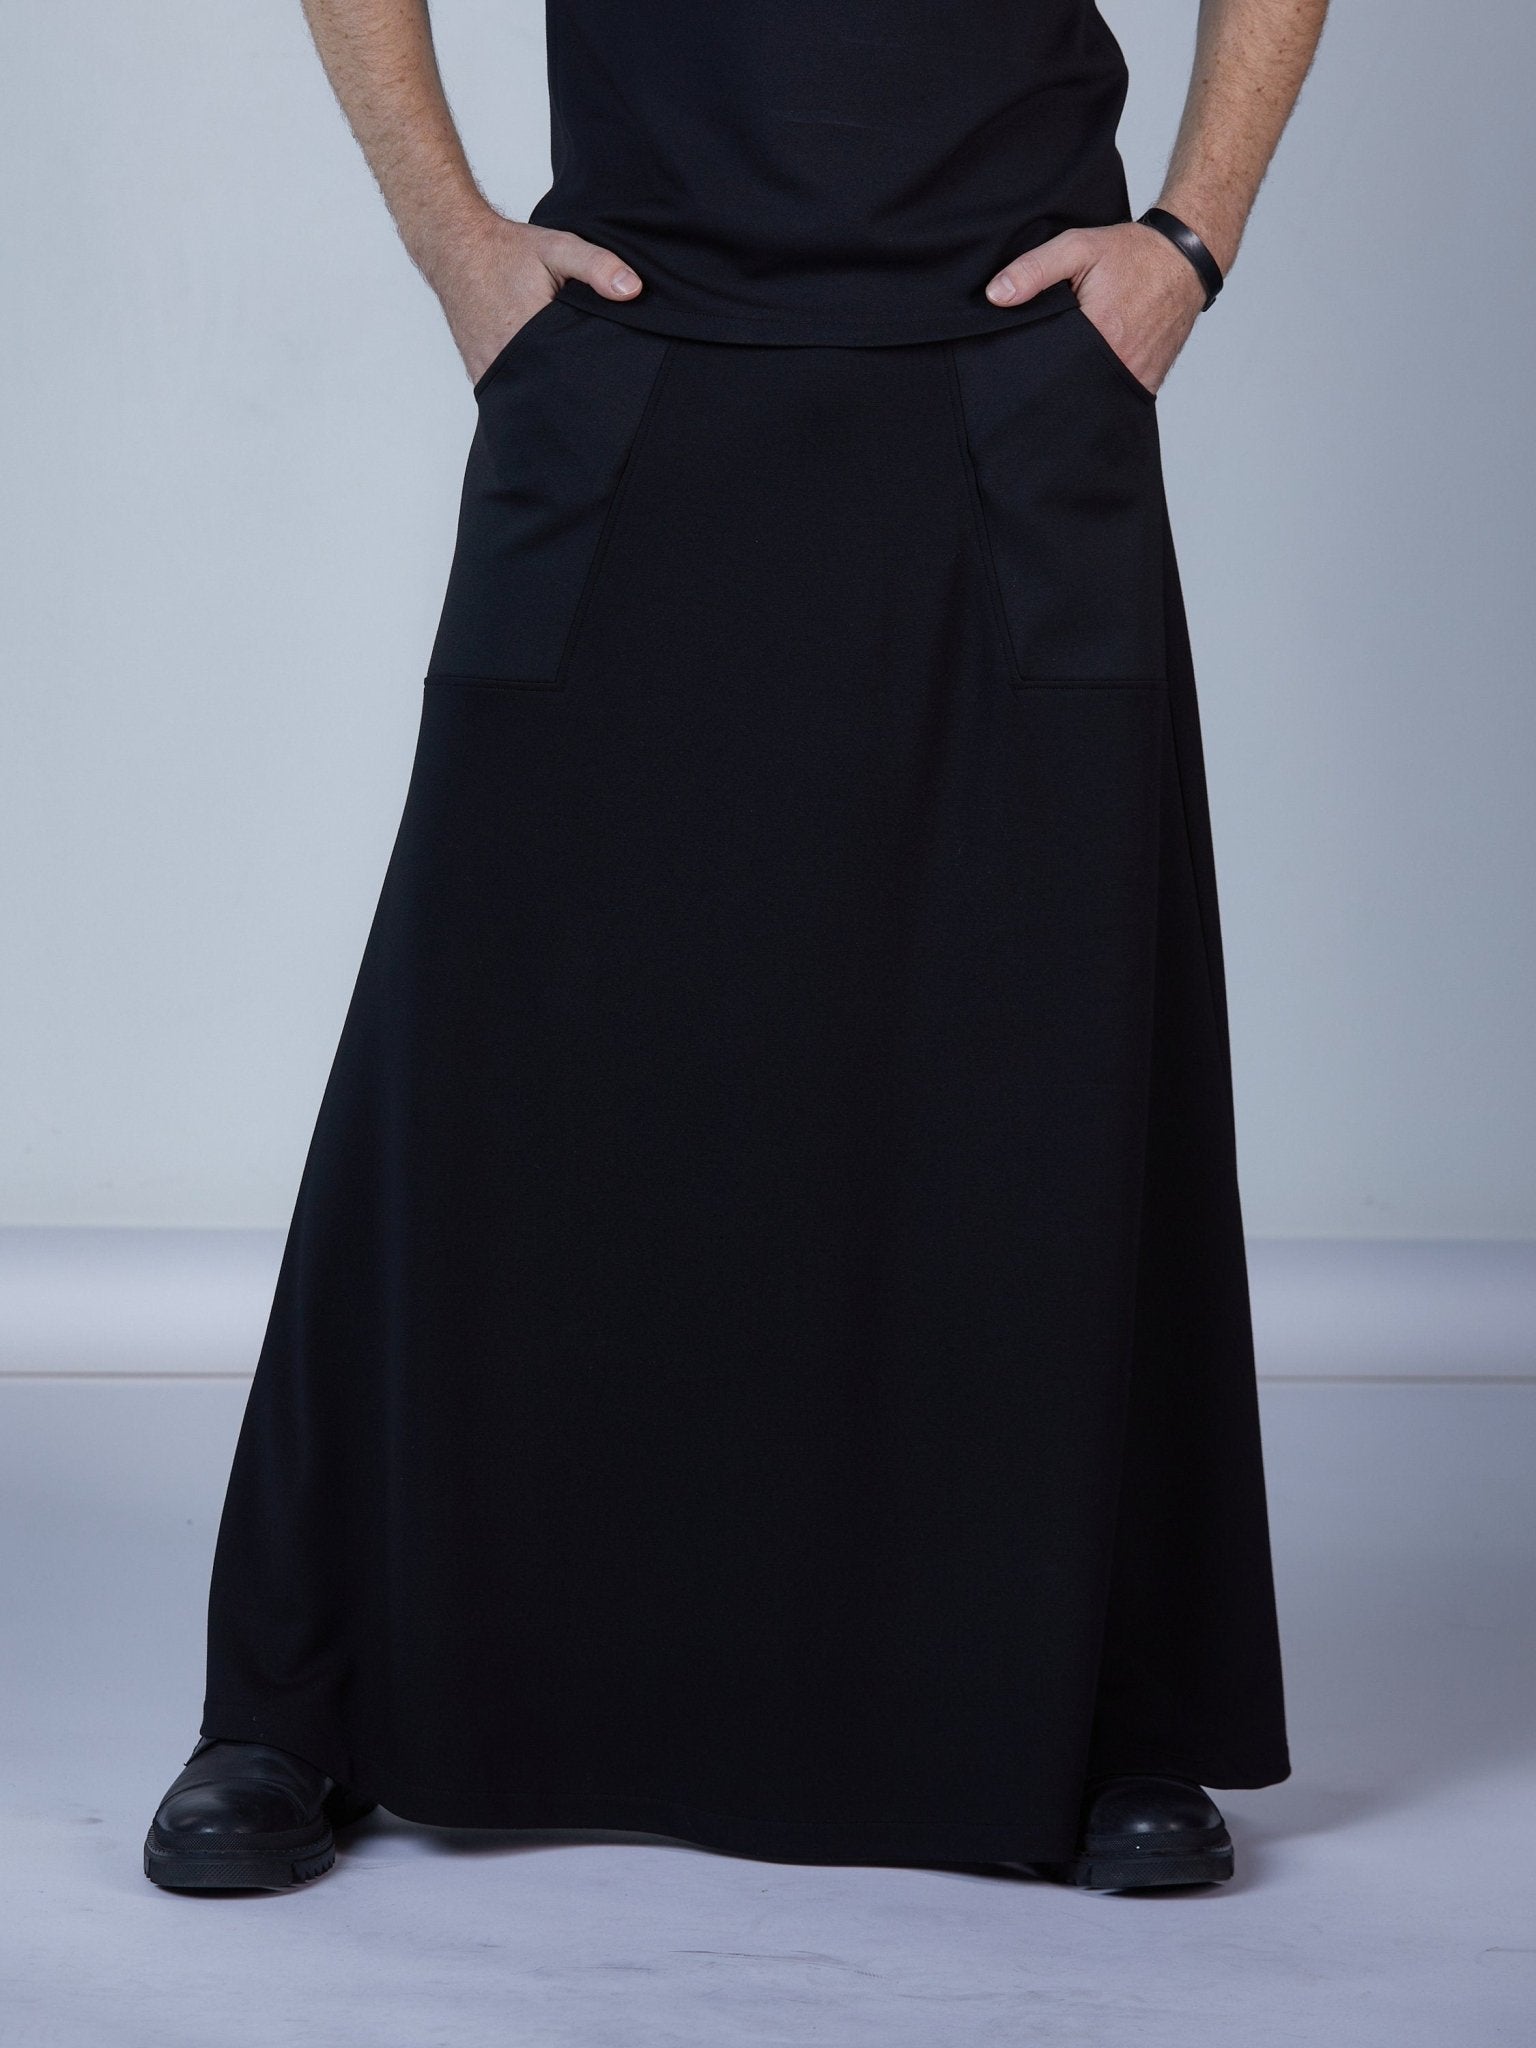 Black Maxi Skirt Floor Length High Waisted Long Skirt Sk-lv 